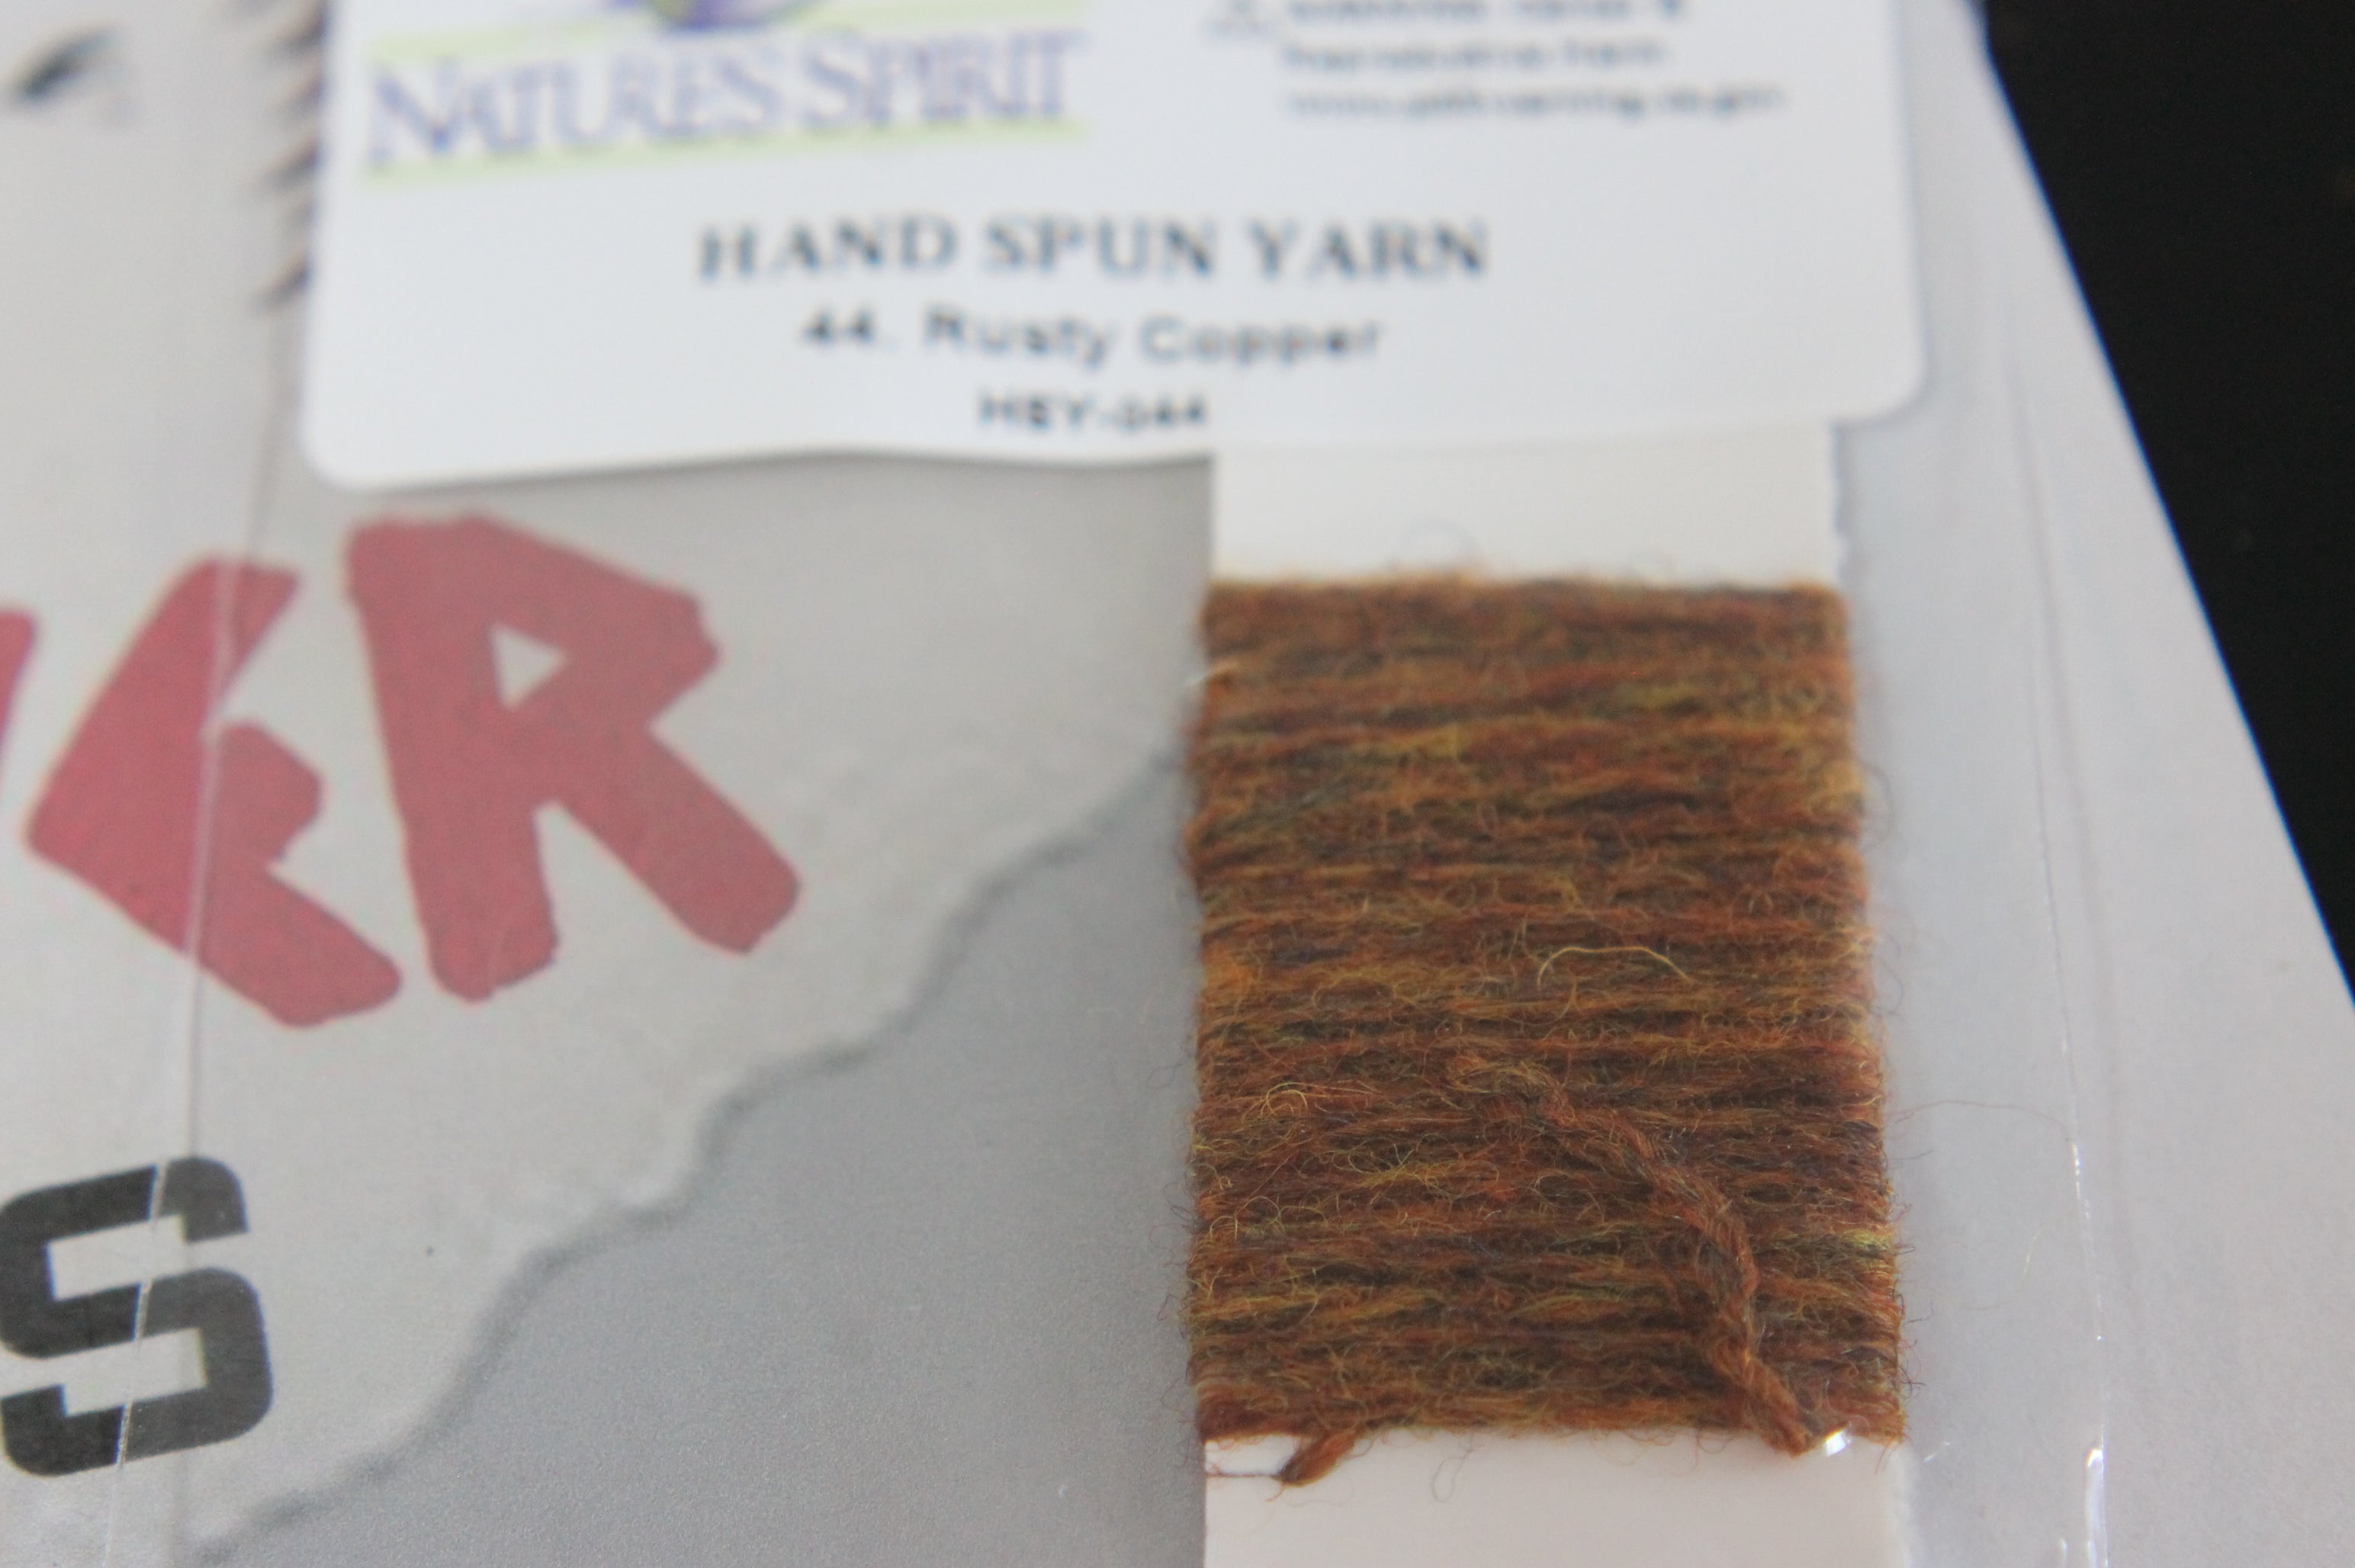 Hand Spun Yarn